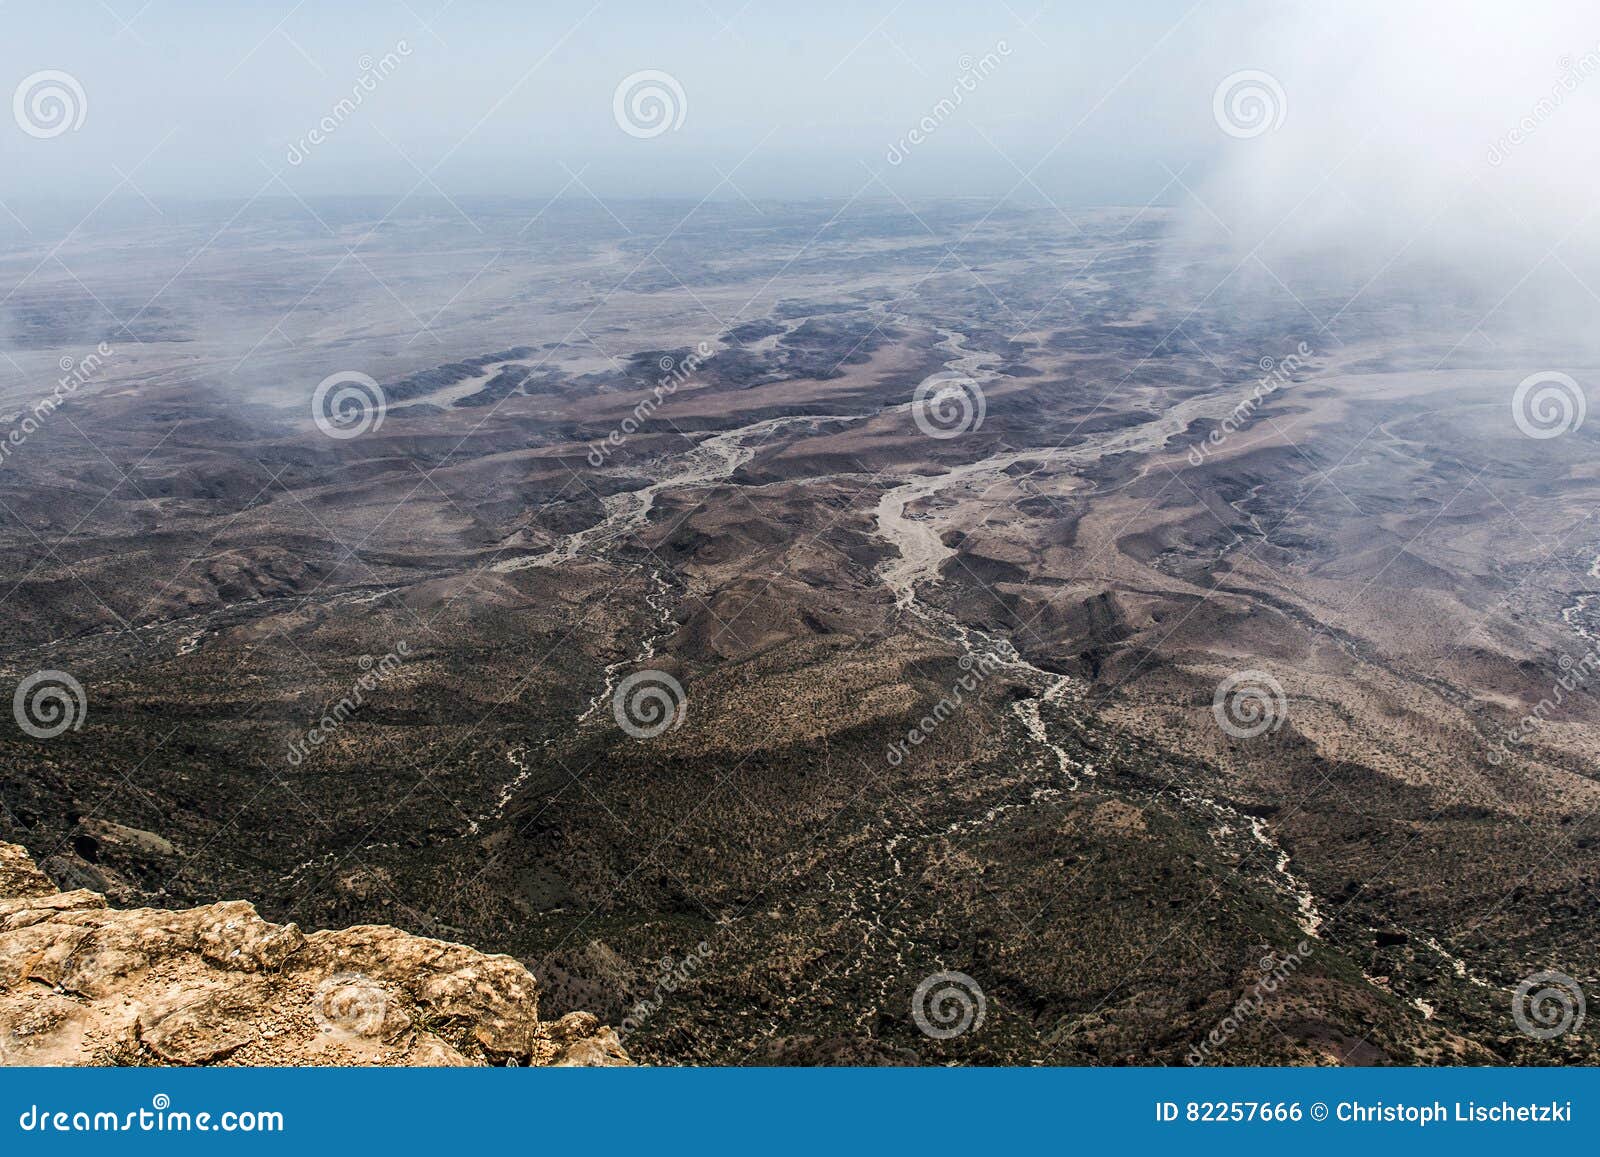 Van het de berggezichtspunt van hoogste puntjabal Samhan de bergen Oman 2 van Dhofar. De berggezichtspunt van hoogste puntjabal Samhan in Dhofar-bergen Oman 2